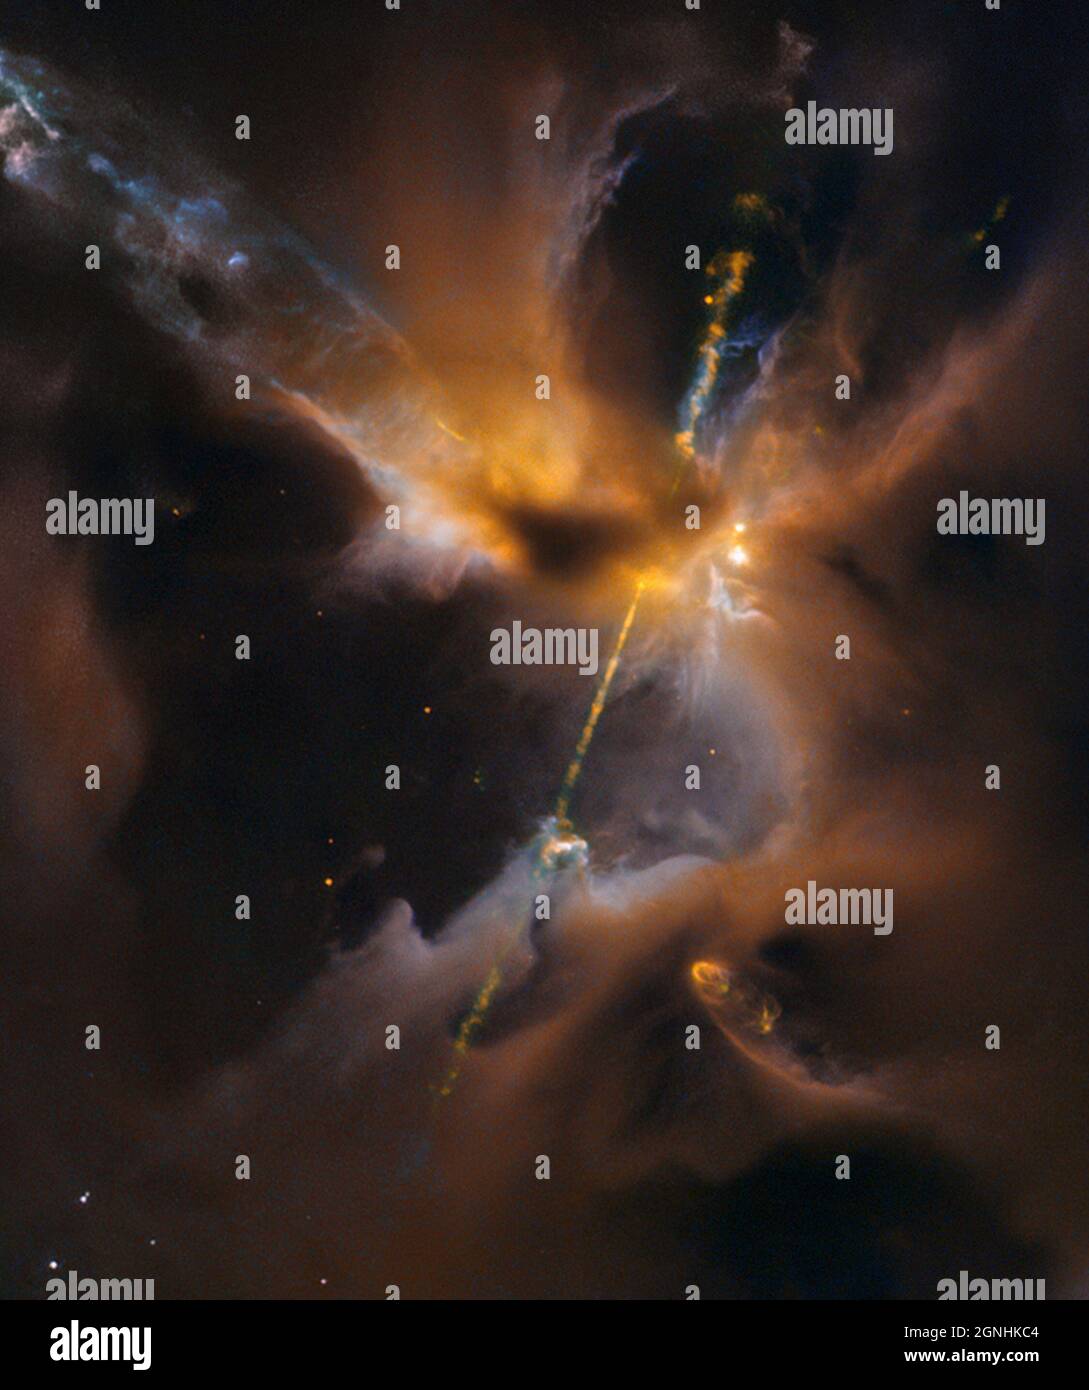 Getti di gas ionizzato espulsi dai poli delle stelle formanti sono noti come oggetti Herbig-Haro (HH). L'oggetto HH prominente mostrato in questa immagine è HH 24 nella regione di formazione a stella Orion. Fonte immagine NASA/ESA Hubble Space Telescope Foto Stock